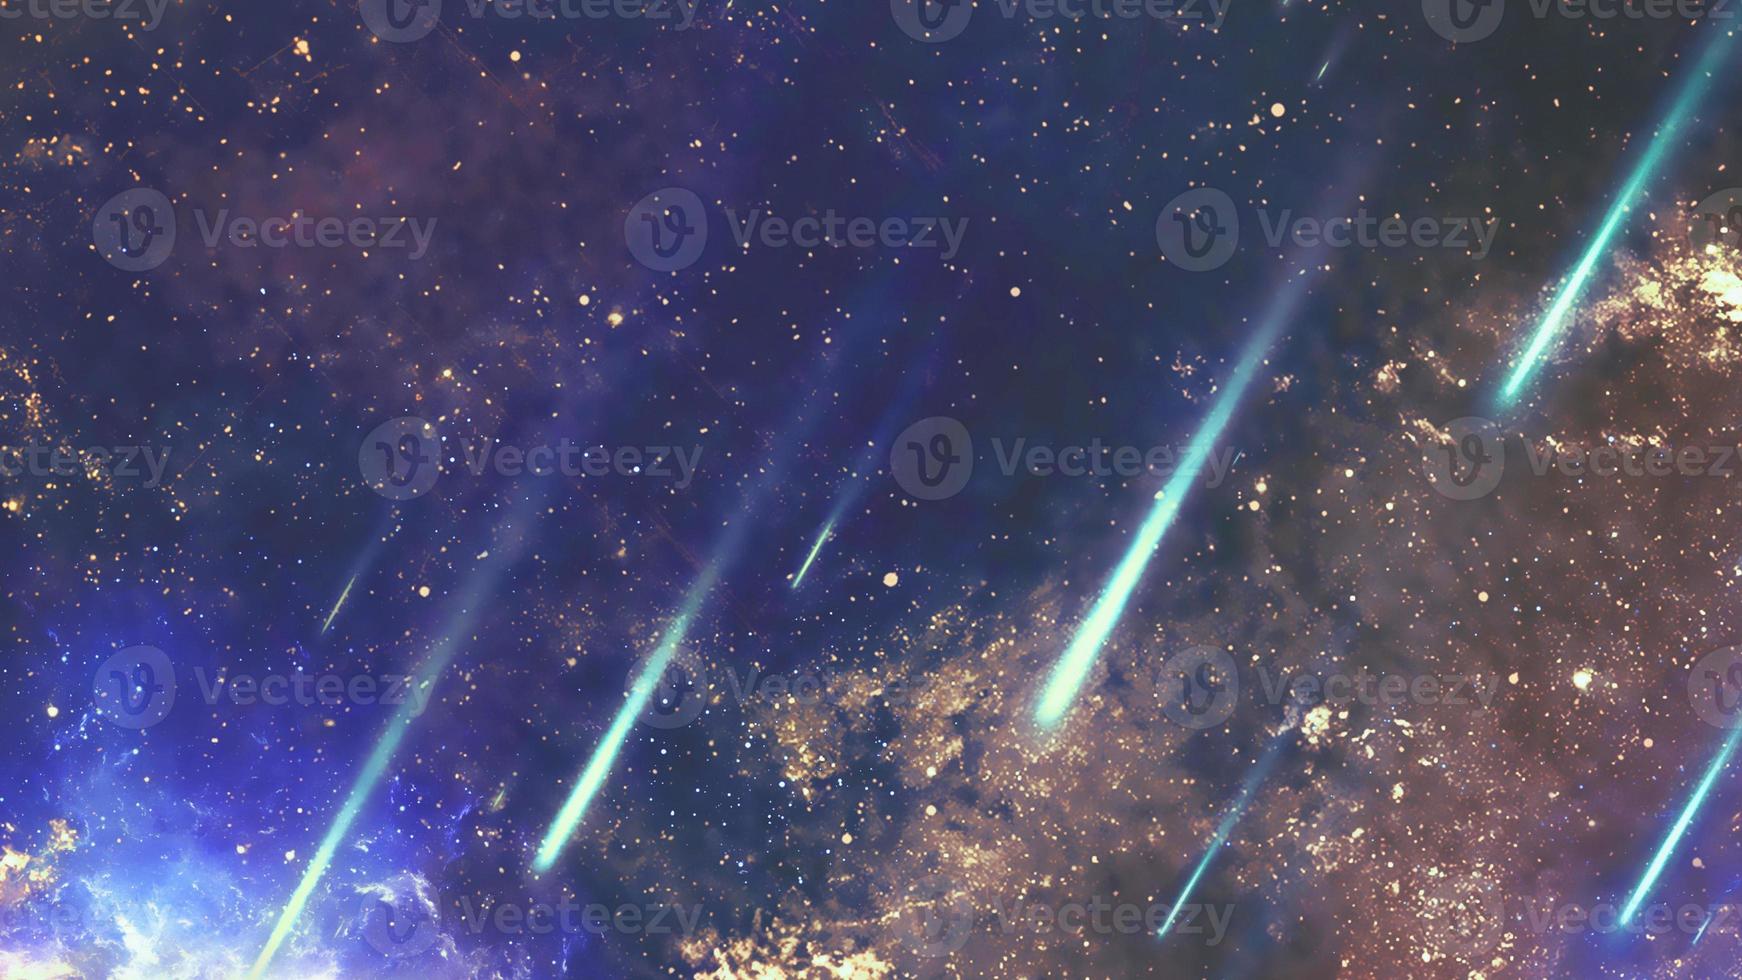 infinito cosmos hermoso fondo azul oscuro con nebulosa, cúmulo de estrellas en el espacio ultraterrestre. belleza del universo infinito lleno de estrellas arte cósmico, papel tapiz de ciencia ficción foto